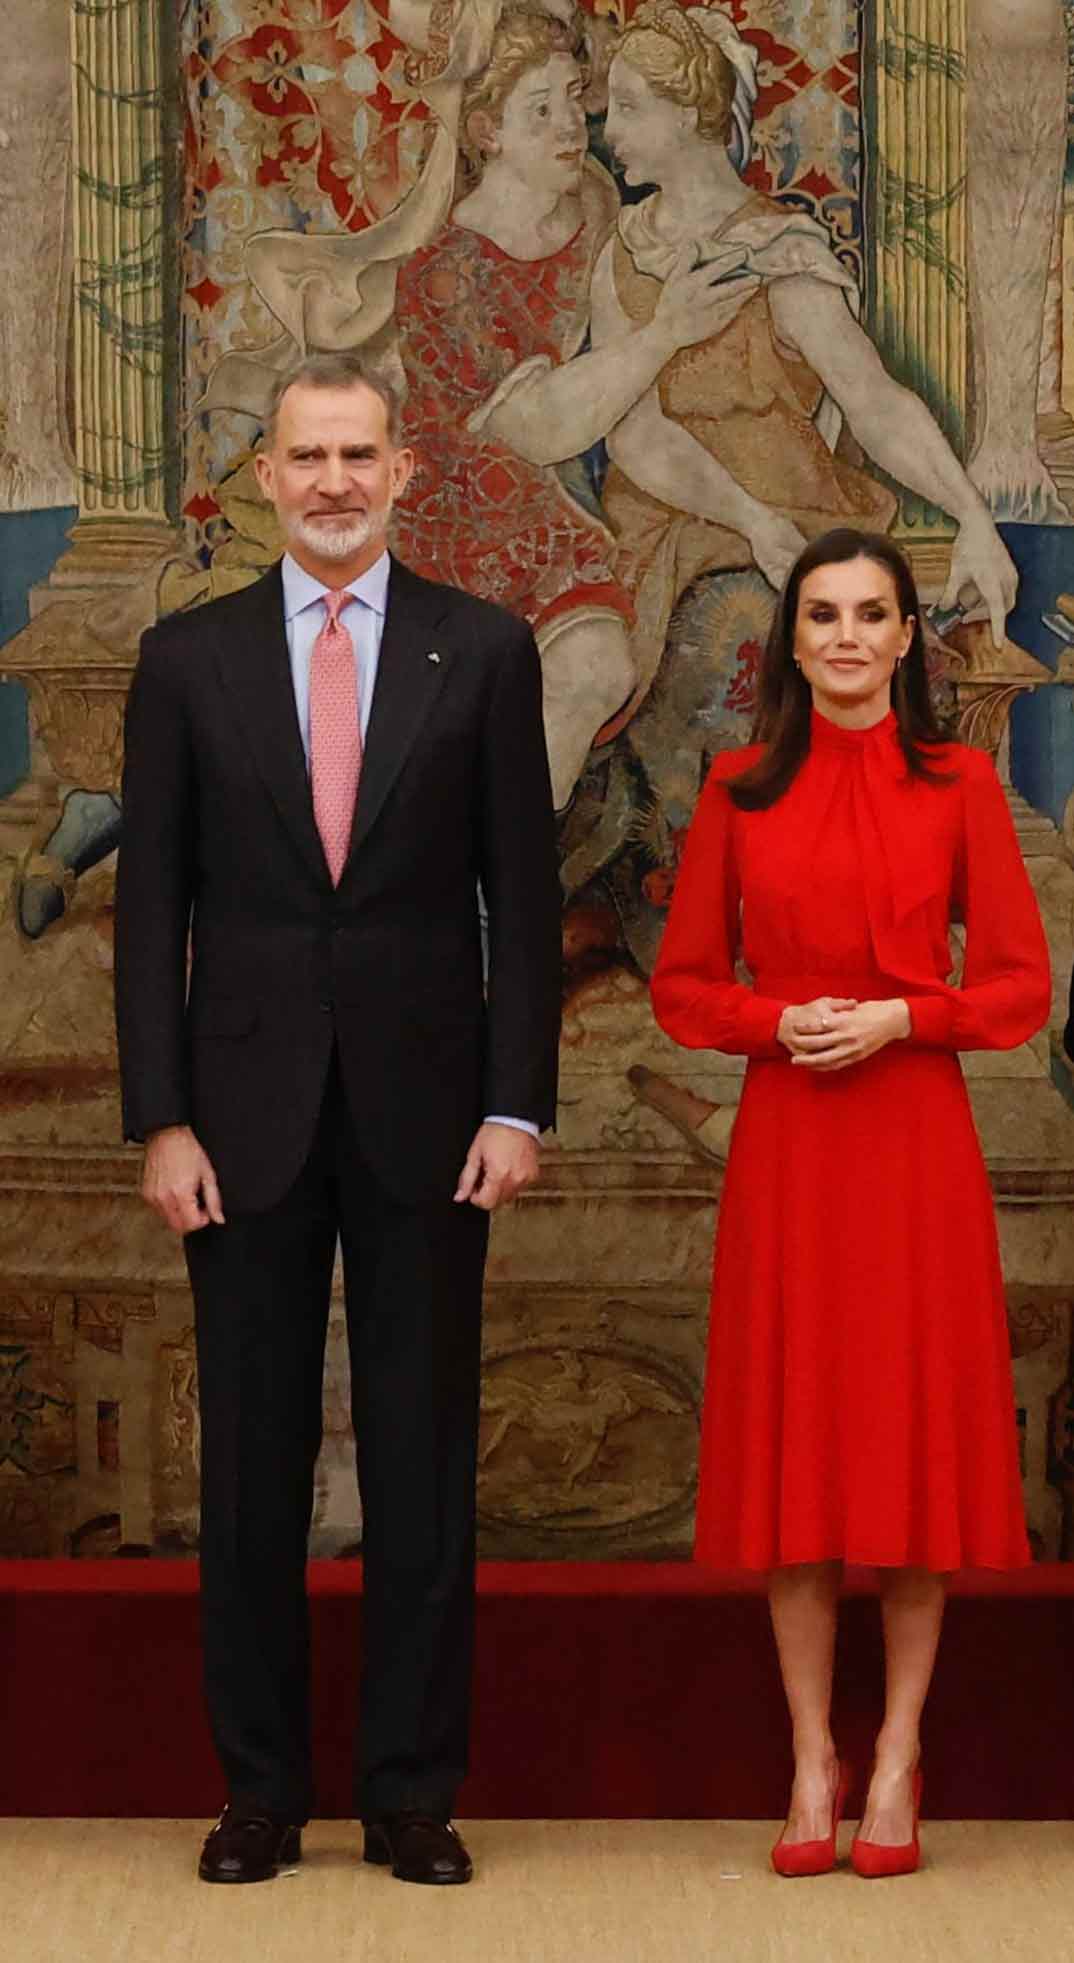 Reyes Felipe y Letizia - Embajadores Honorarios de la Marca España © Casa Real S.M. El Rey